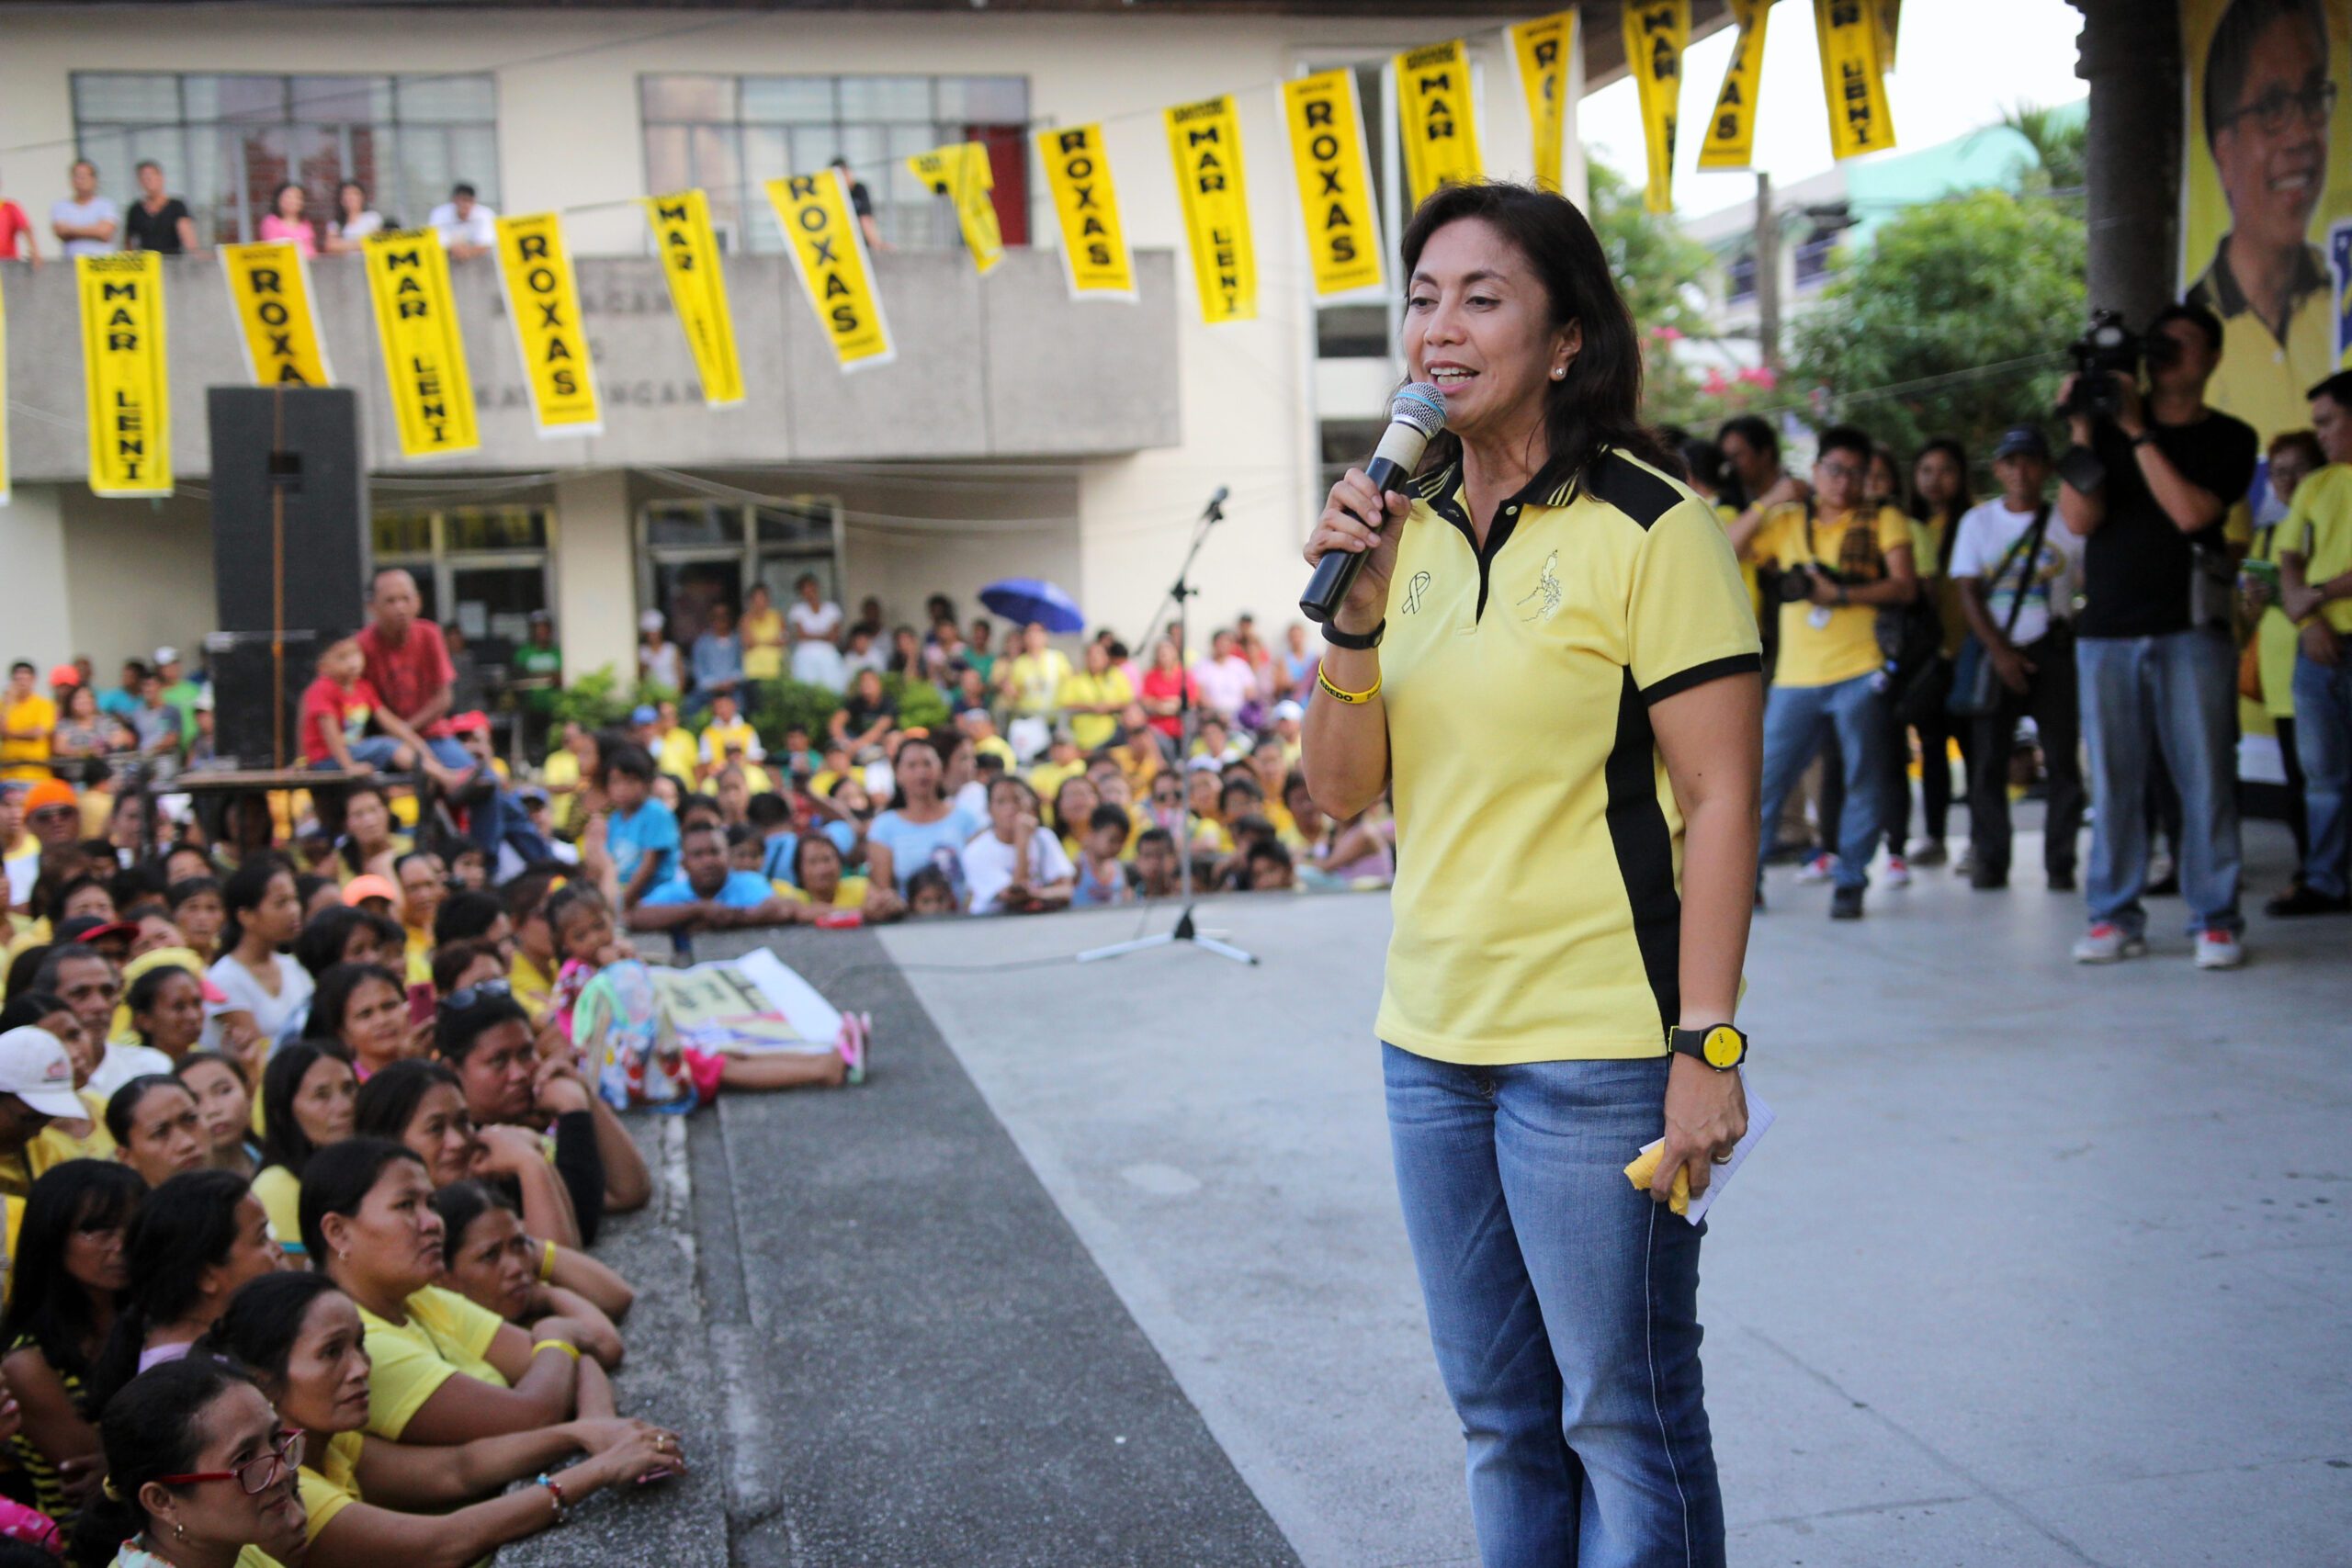 Aquino sister ‘confident’ in Robredo victory in 2016 polls